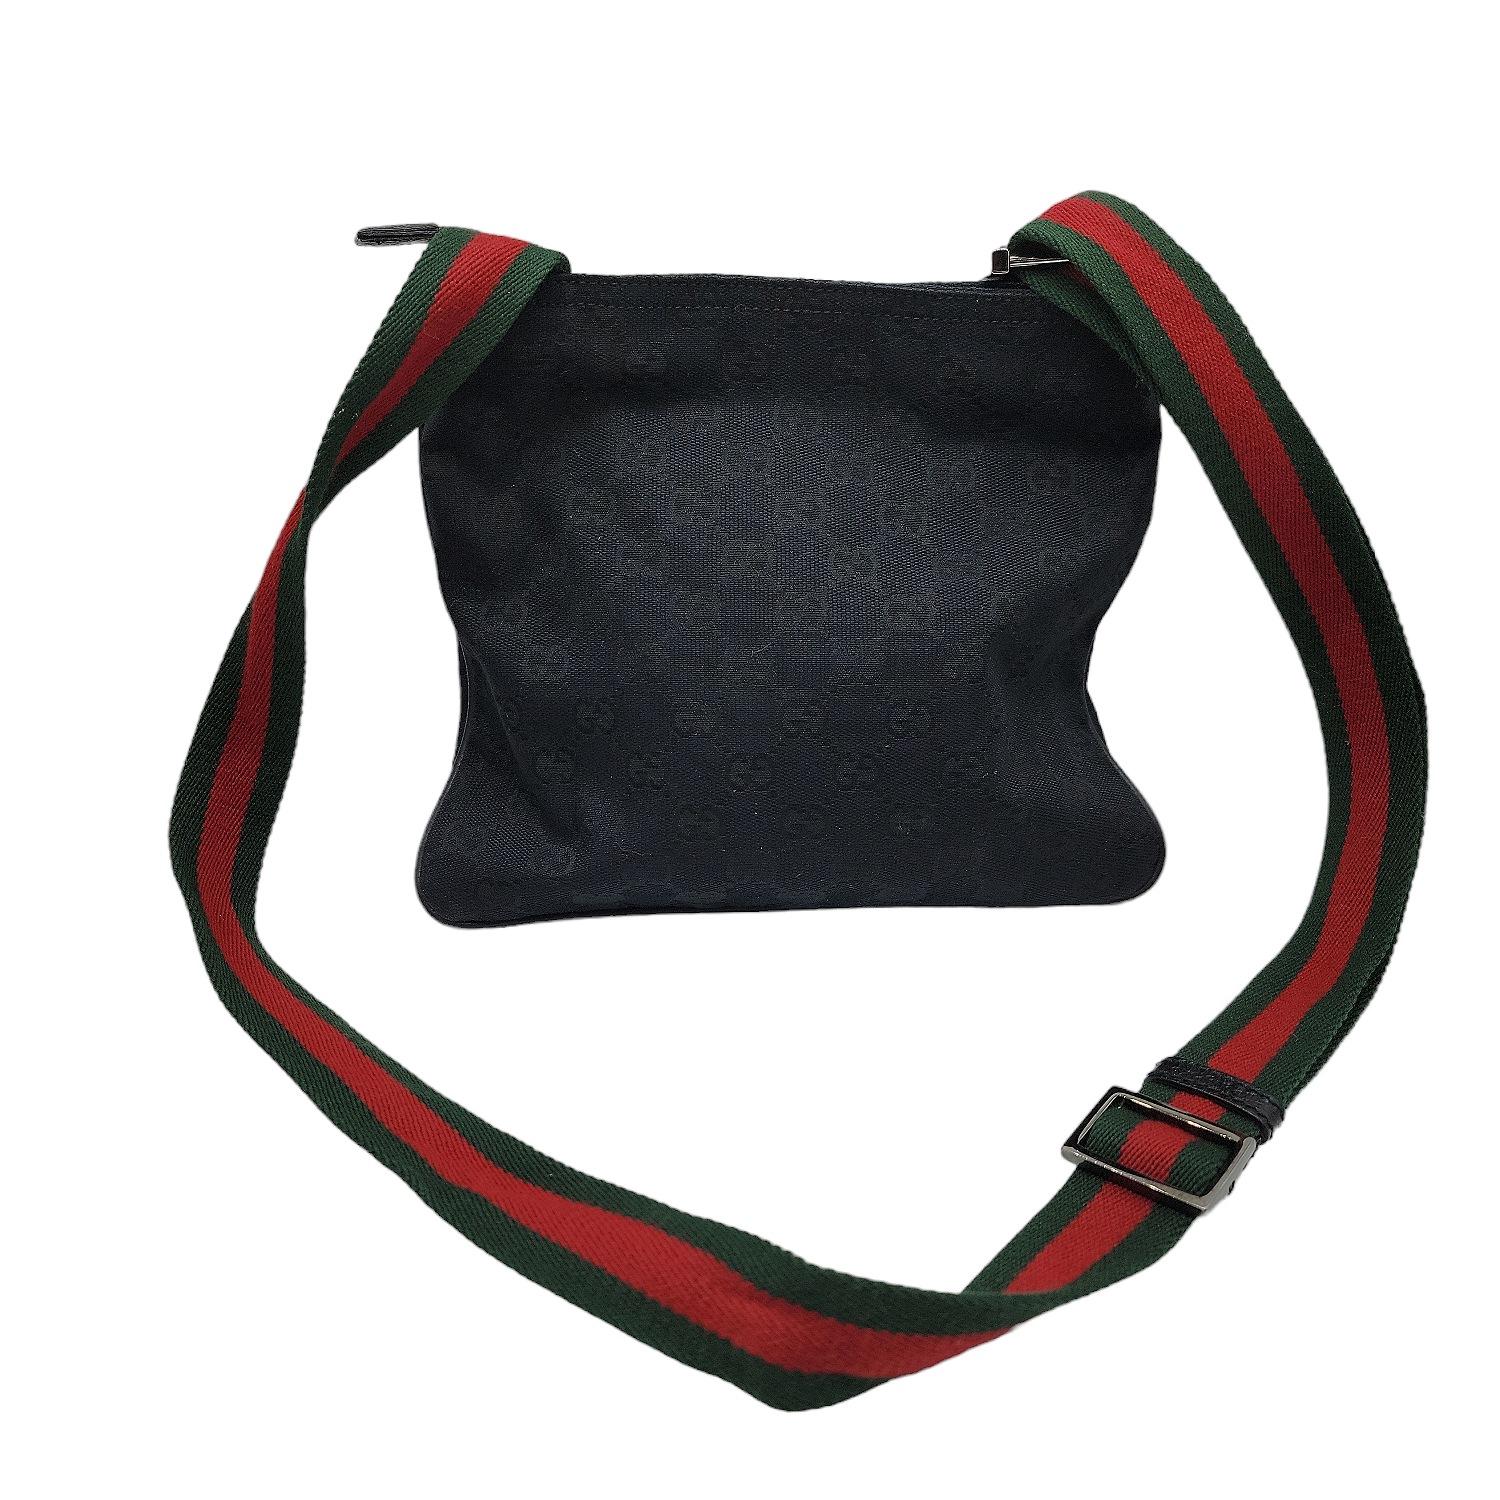 Schwarze GG Canvas Gucci Small Messenger Bag mit Metallbeschlägen, einem einzelnen verstellbaren Schulterriemen mit grünem und rotem Webbesatz, geprägter Logoplakette auf der Vorderseite, farblich abgestimmten Lederbesätzen und Paspeln, farblich